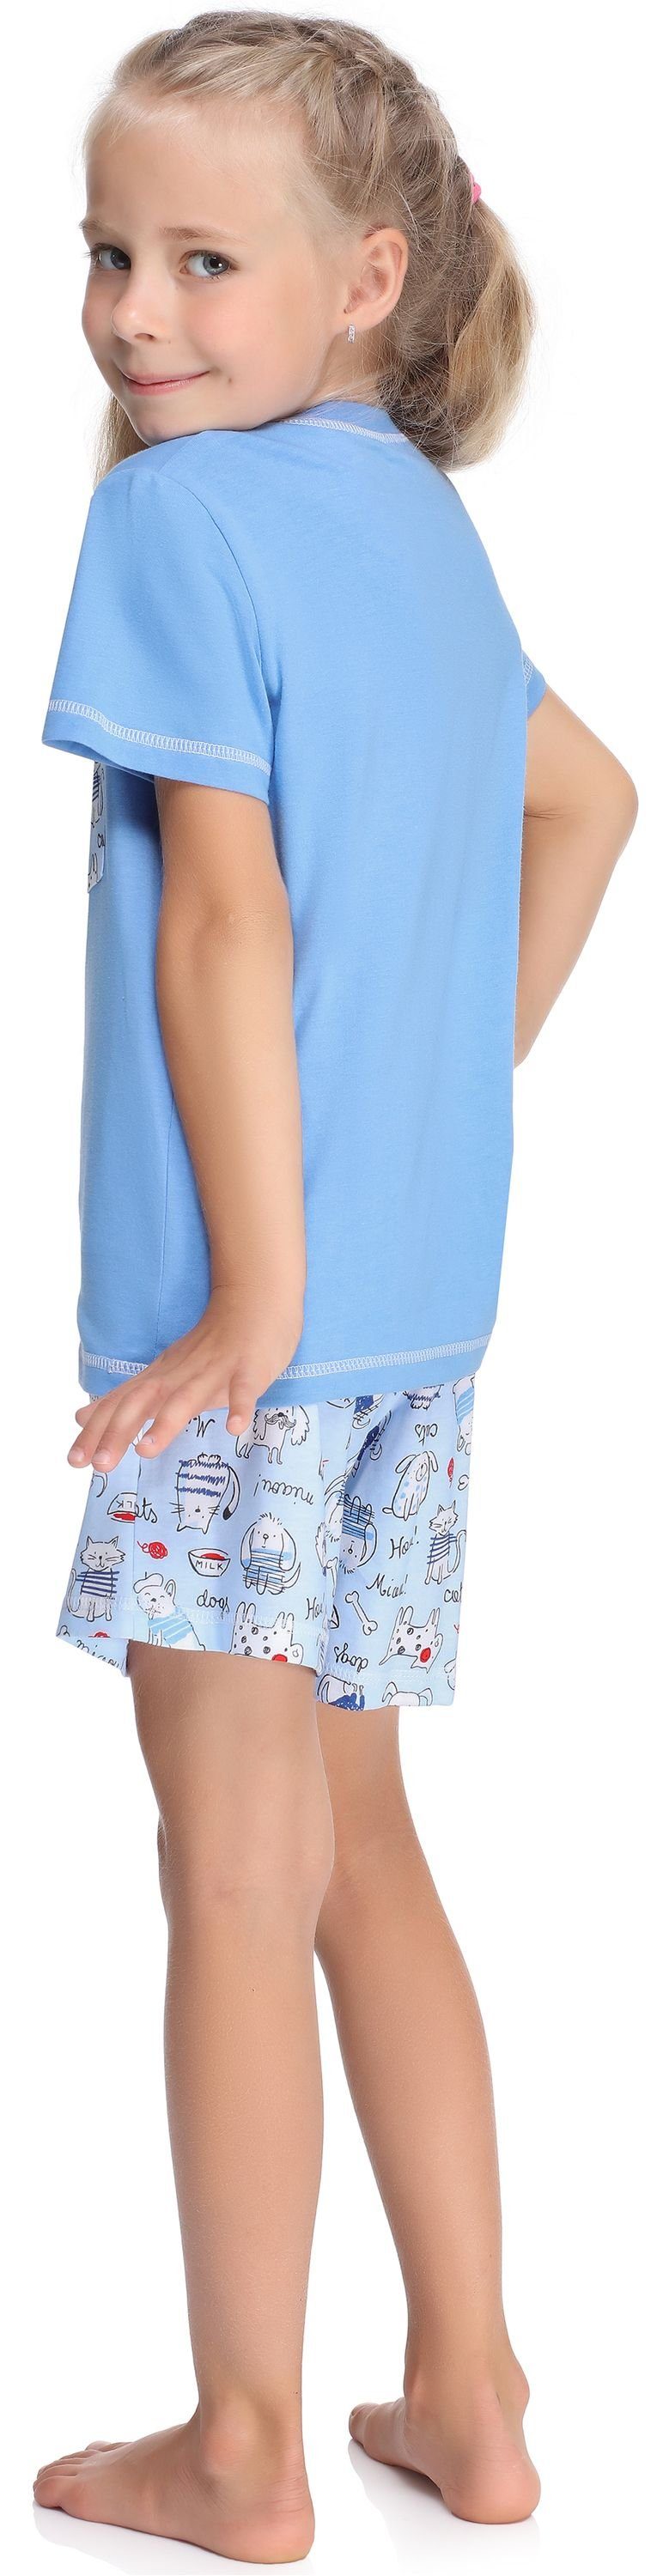 Style Mädchen aus Blau/Hunde/Katze Baumwolle Kurz Schlafanzüge Pyjama Schlafanzug MS10-292 Set Merry